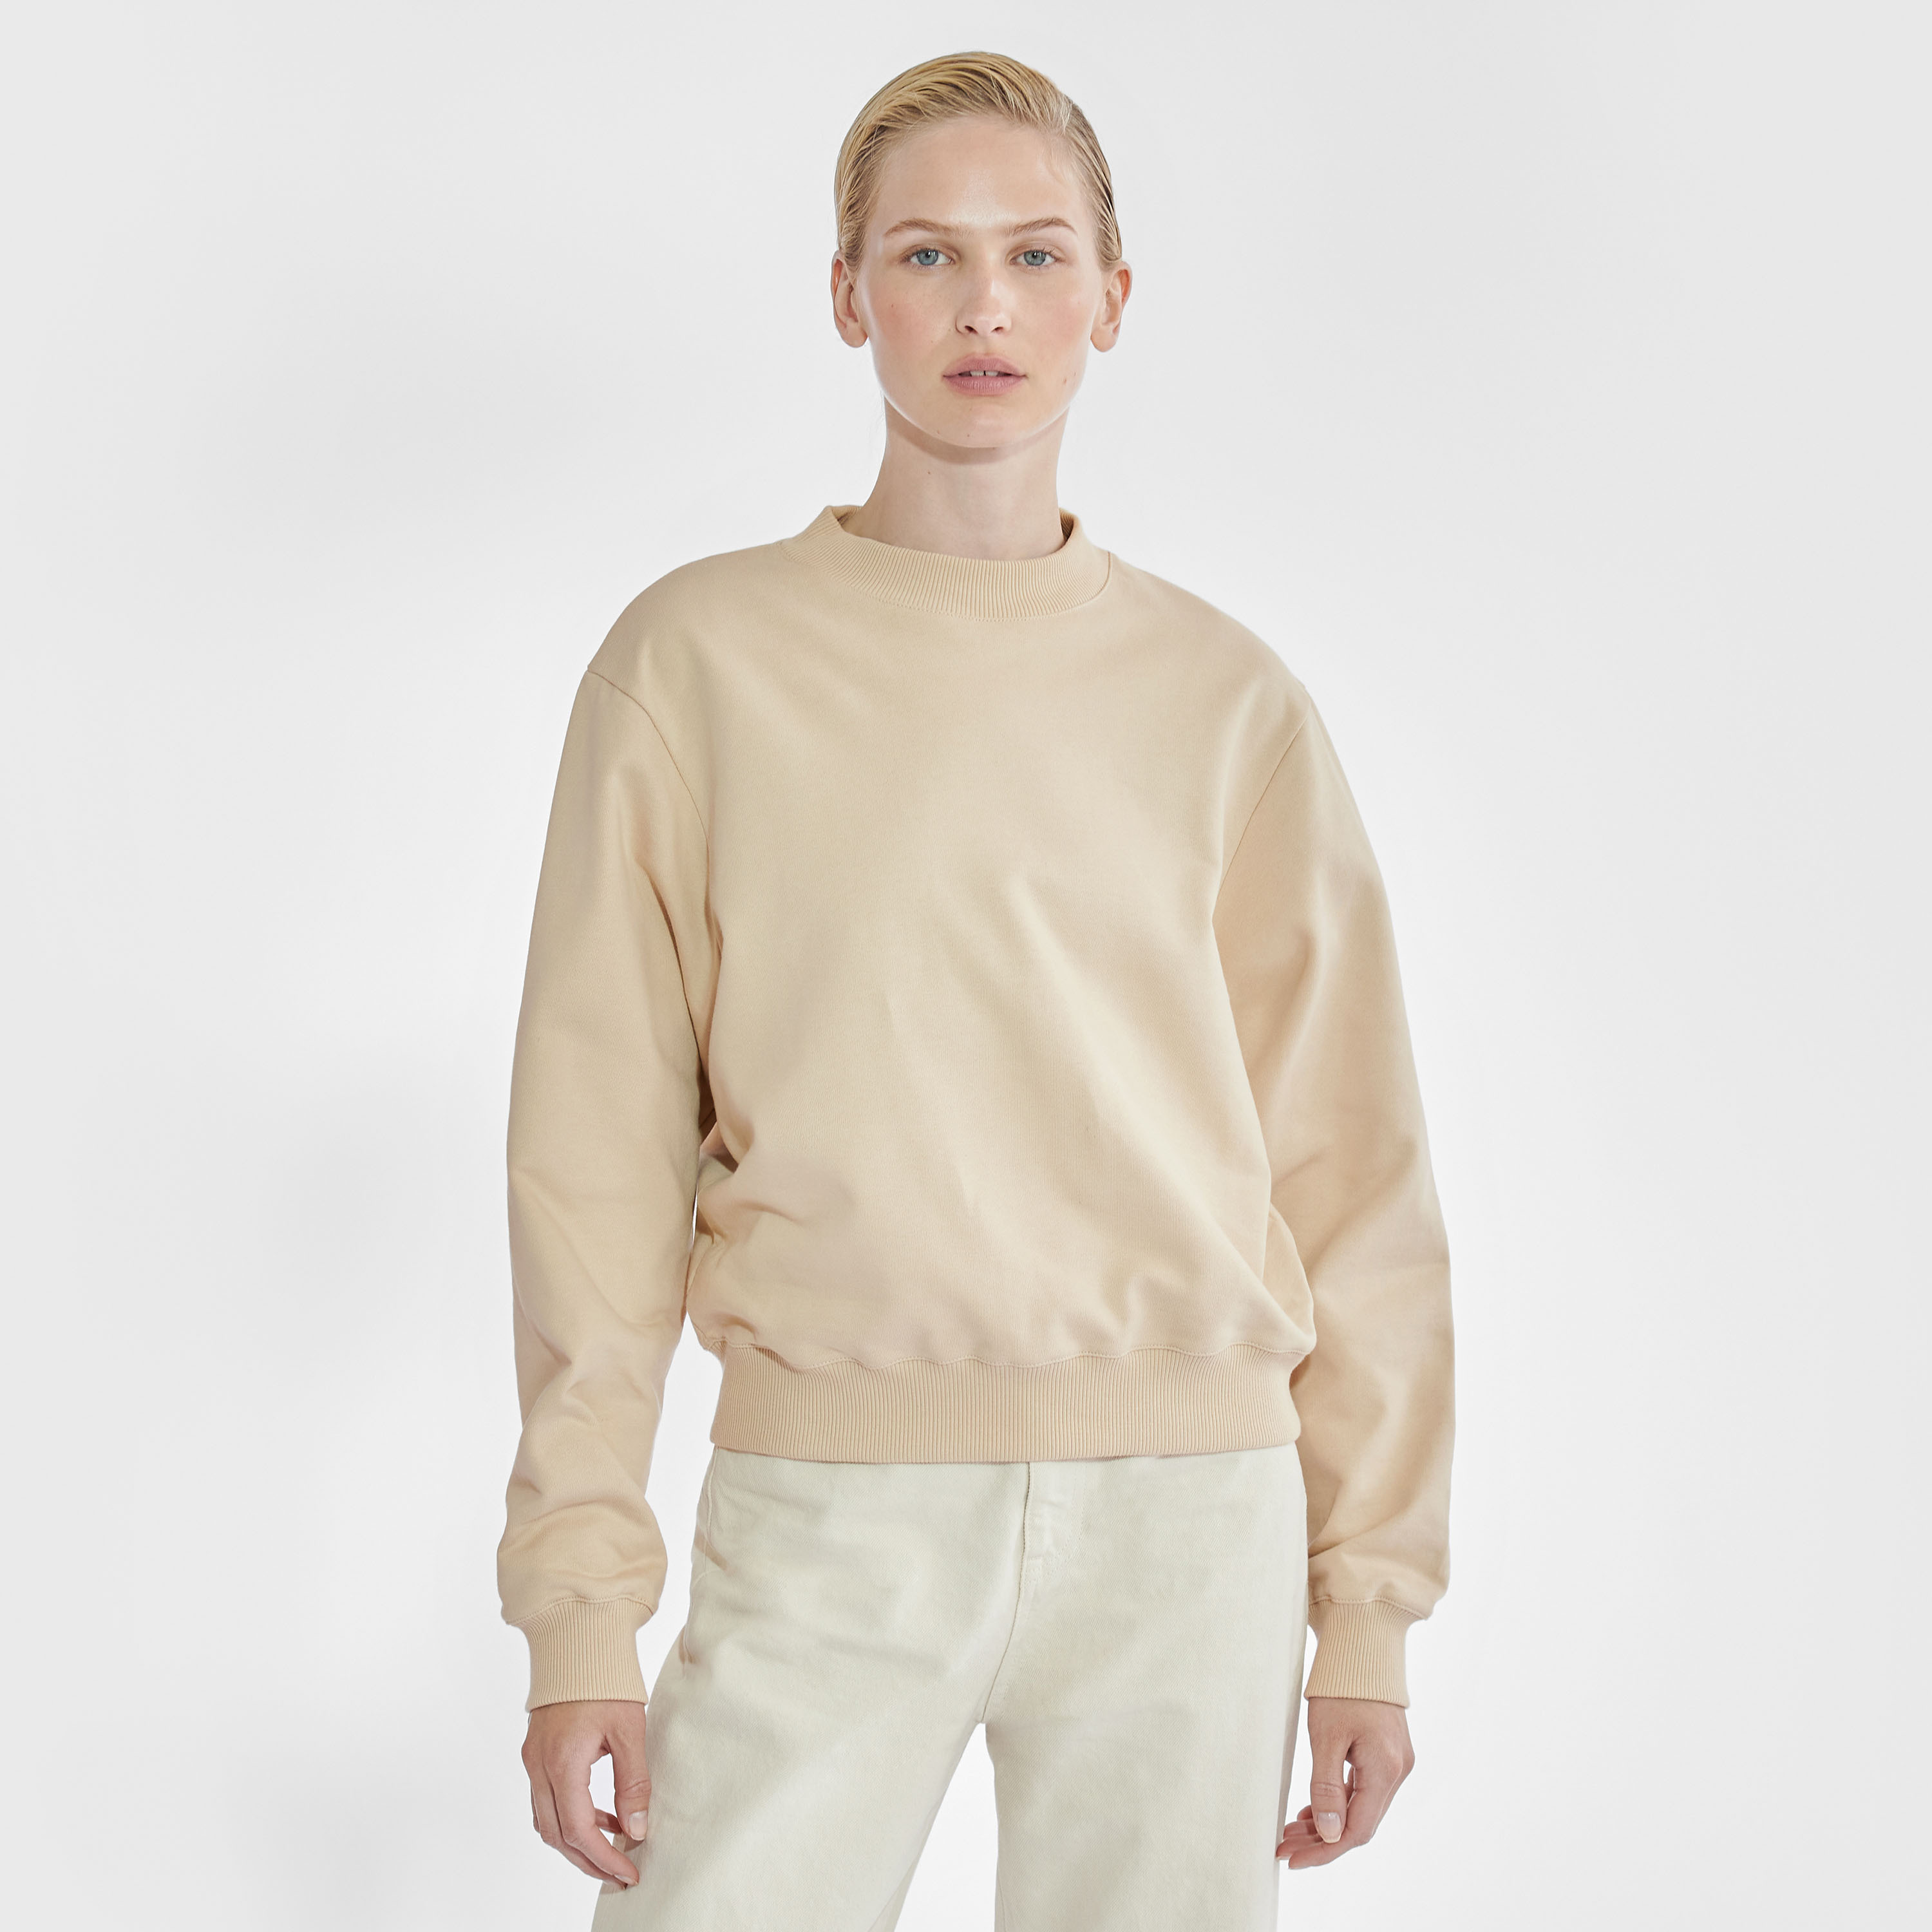 Sweatshirt by Biderman 有機棉精織衛衣 - 沙色